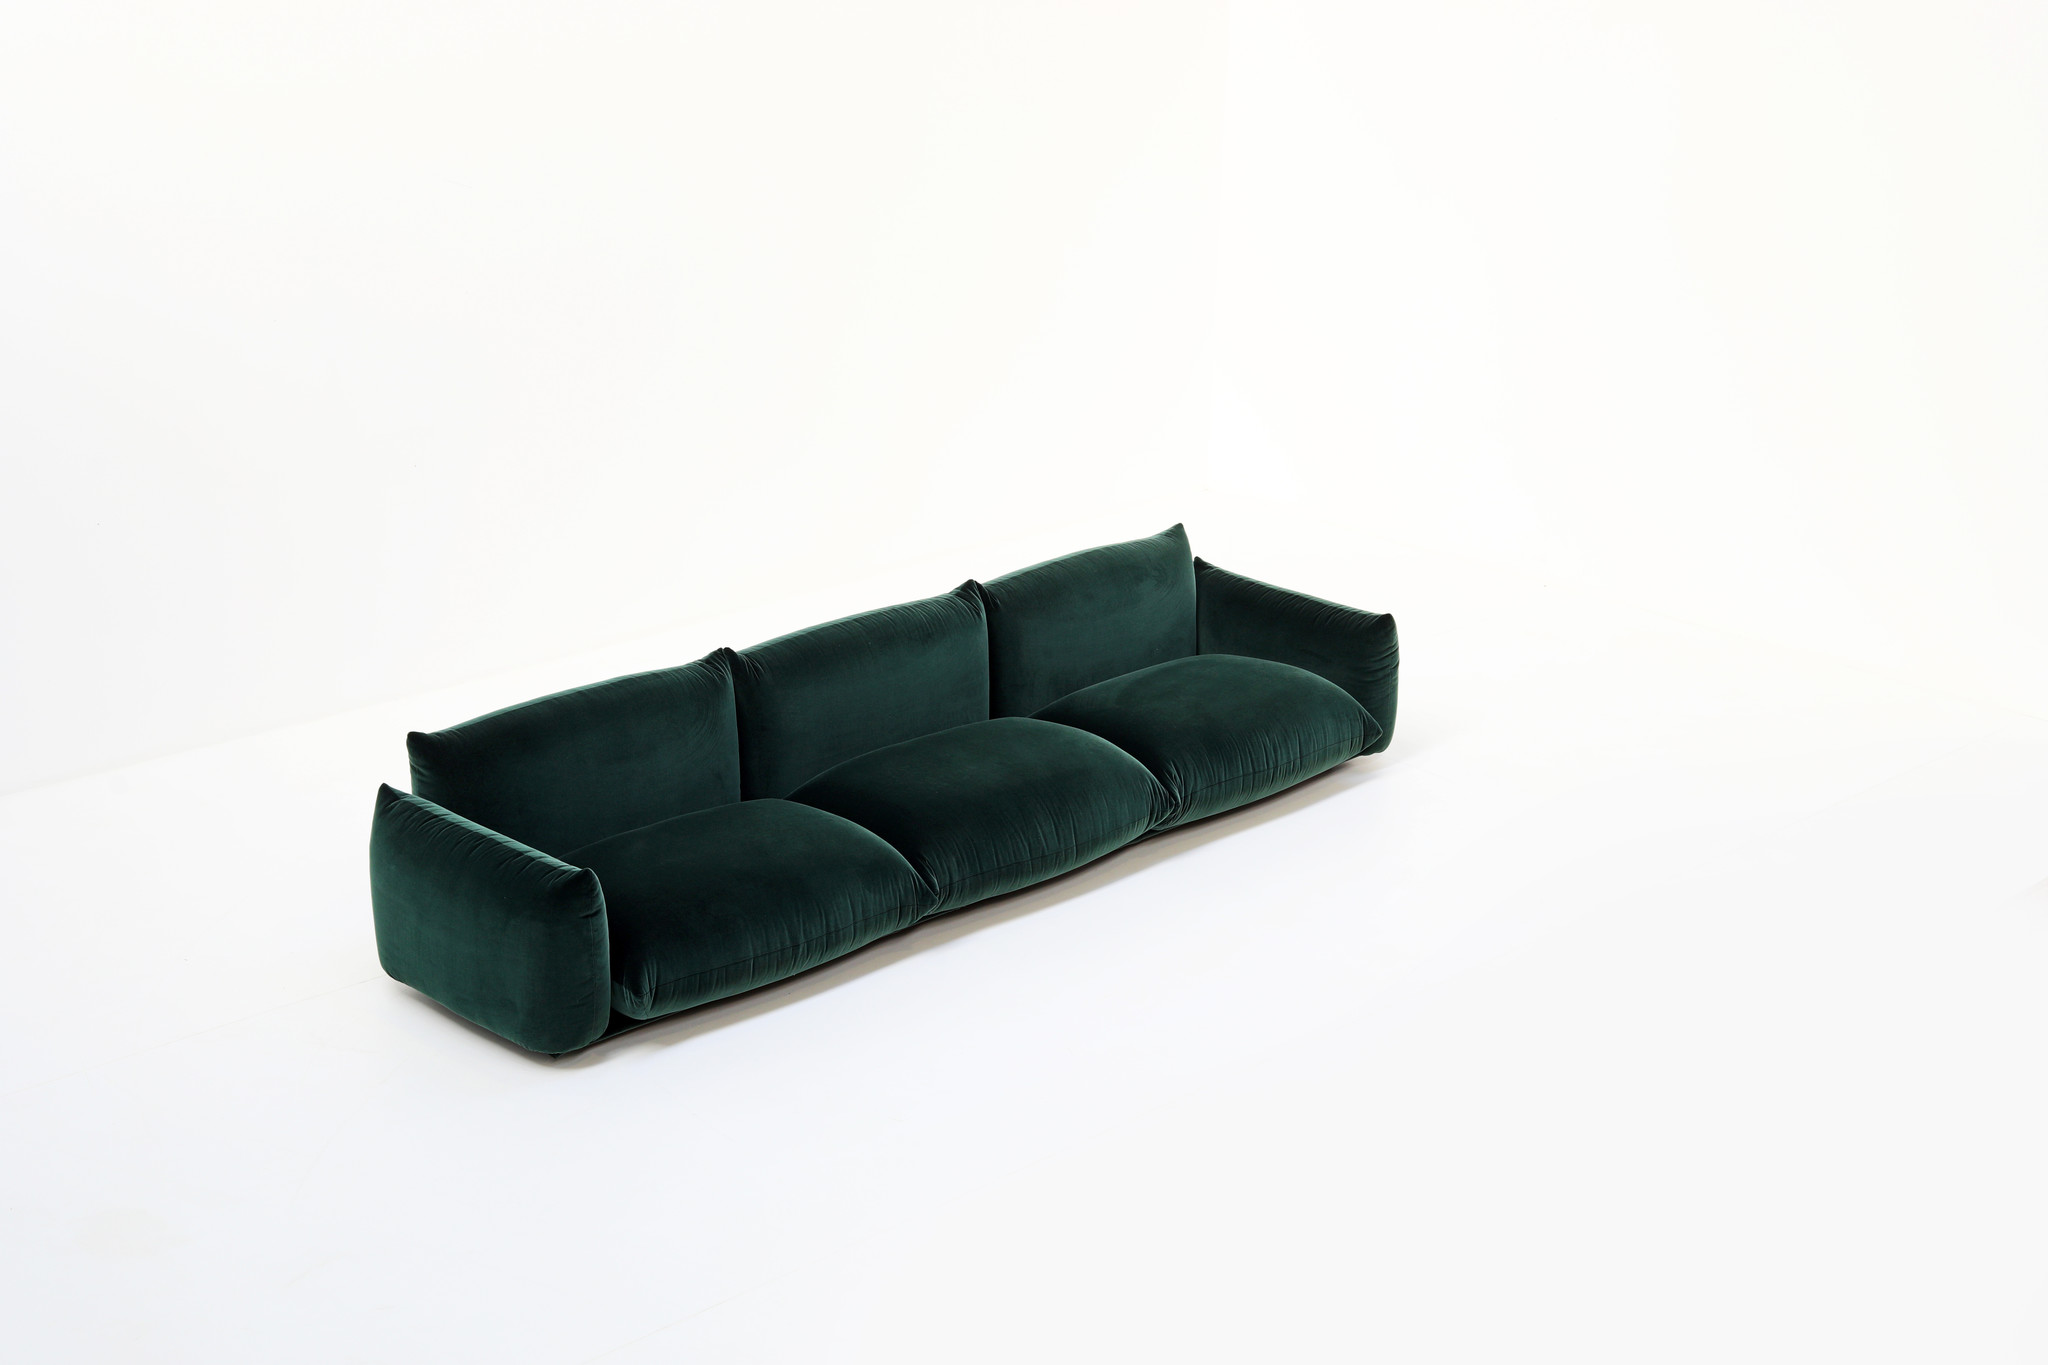 Marenco Sofa designed by Mario Marenco for Arflex